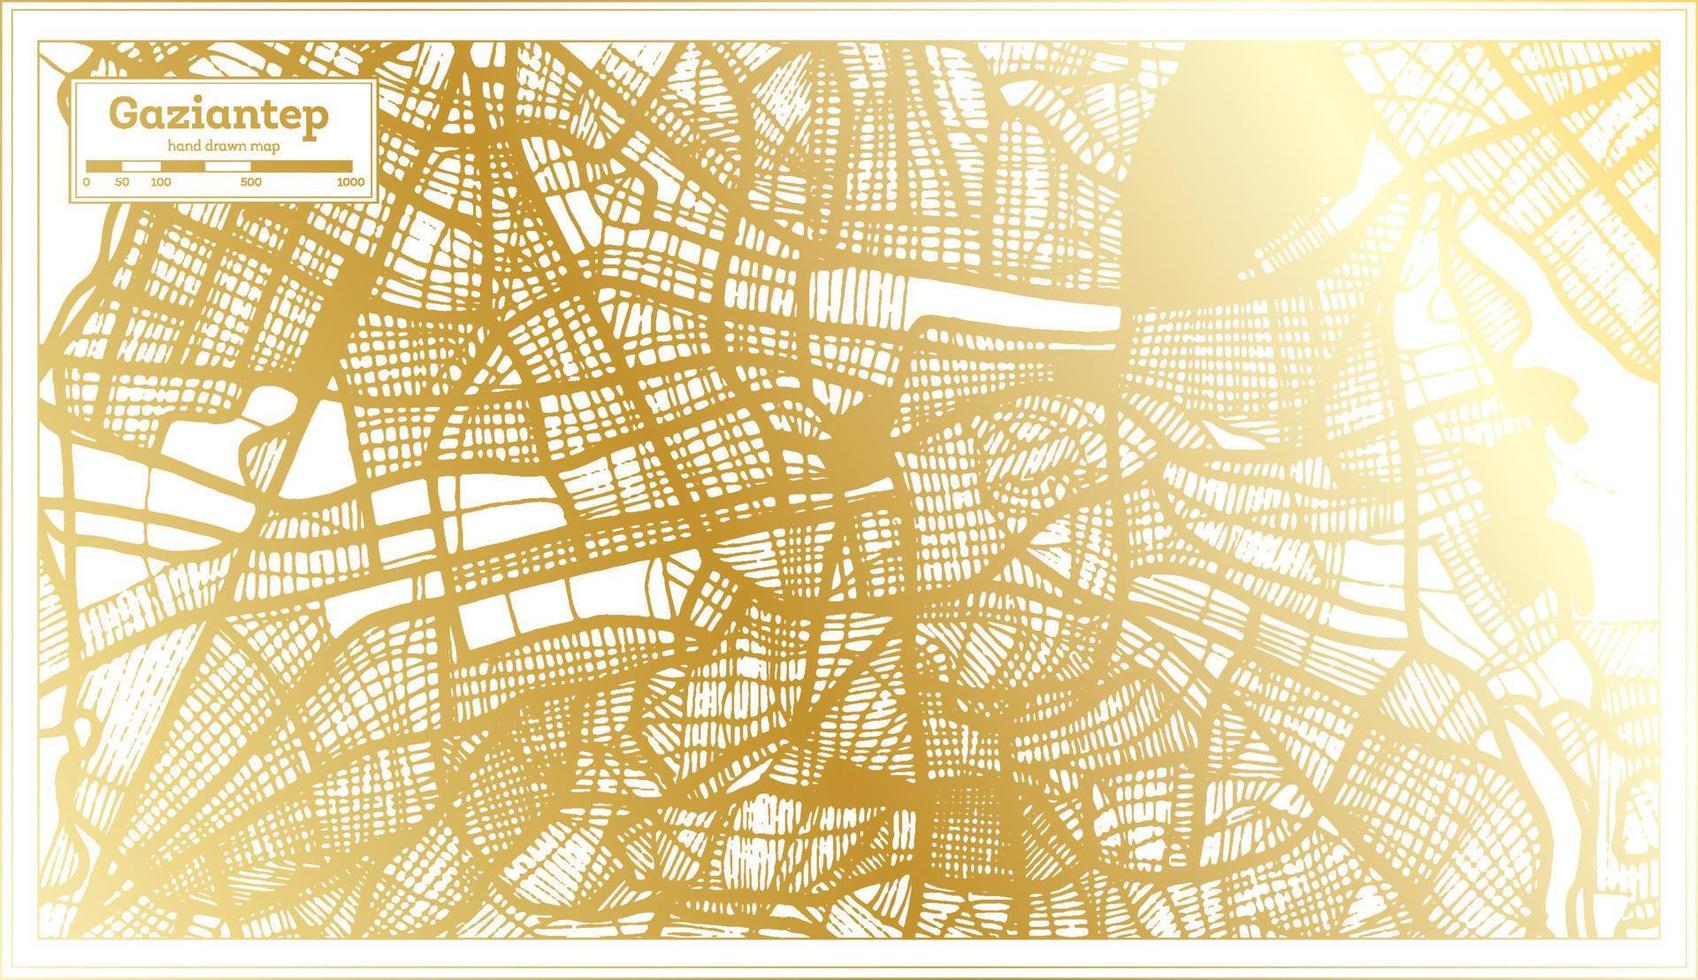 plan de la ville de gaziantep turquie dans un style rétro de couleur dorée. carte muette. vecteur